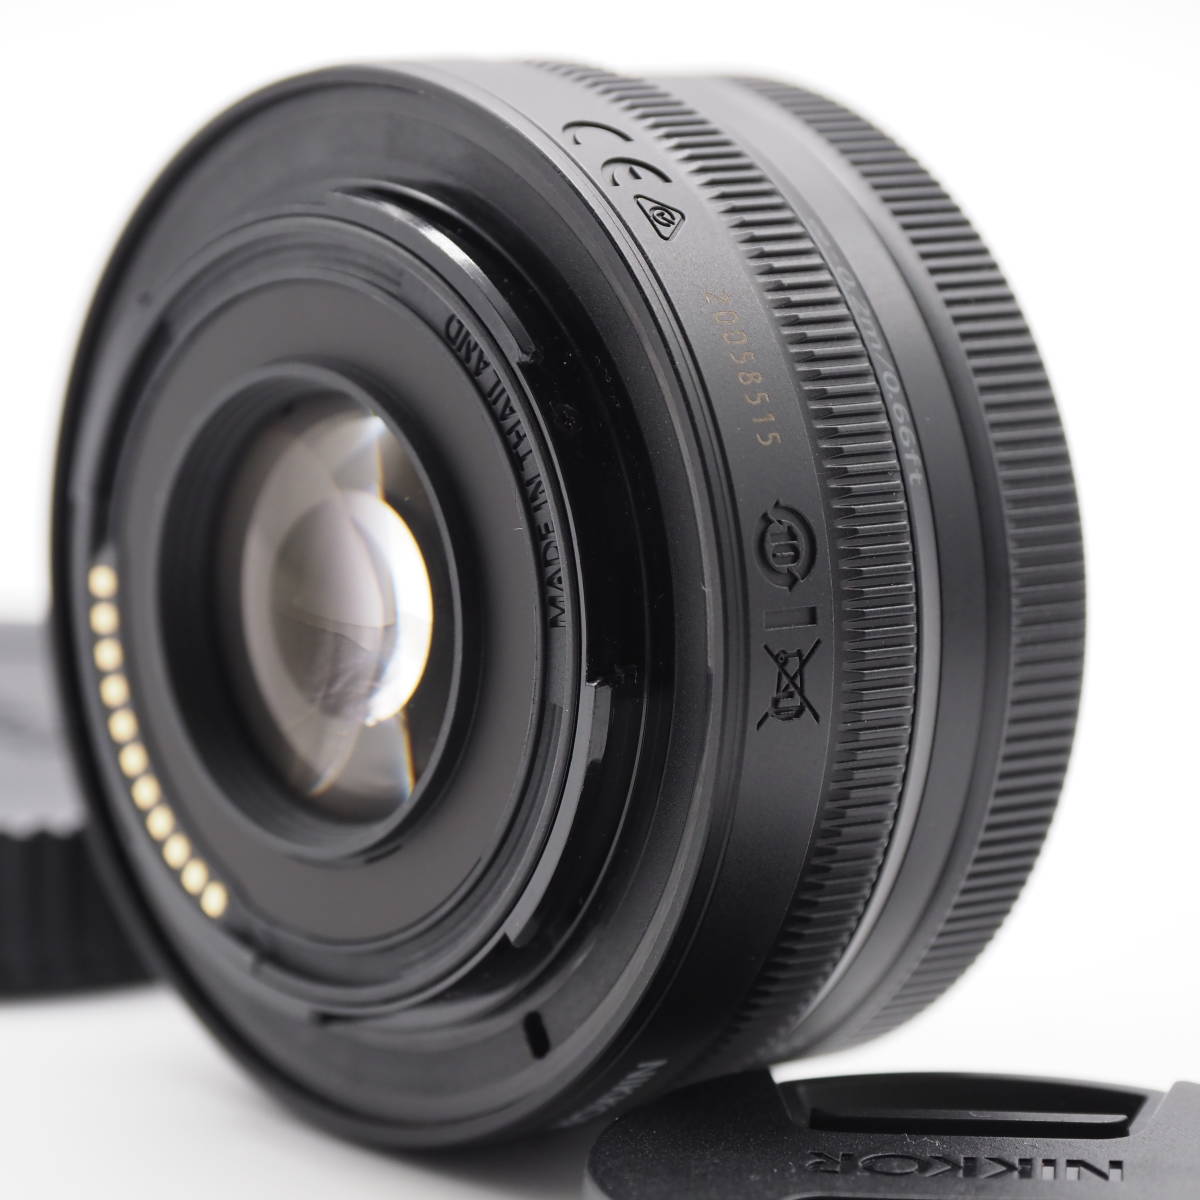  Nikon ニコン 標準ズームレンズ NIKKOR Z DX 16-50mm f/3.5-6.3 VR Zマウント DXレンズ NZDXVR16-50 ブラック #2609_画像6